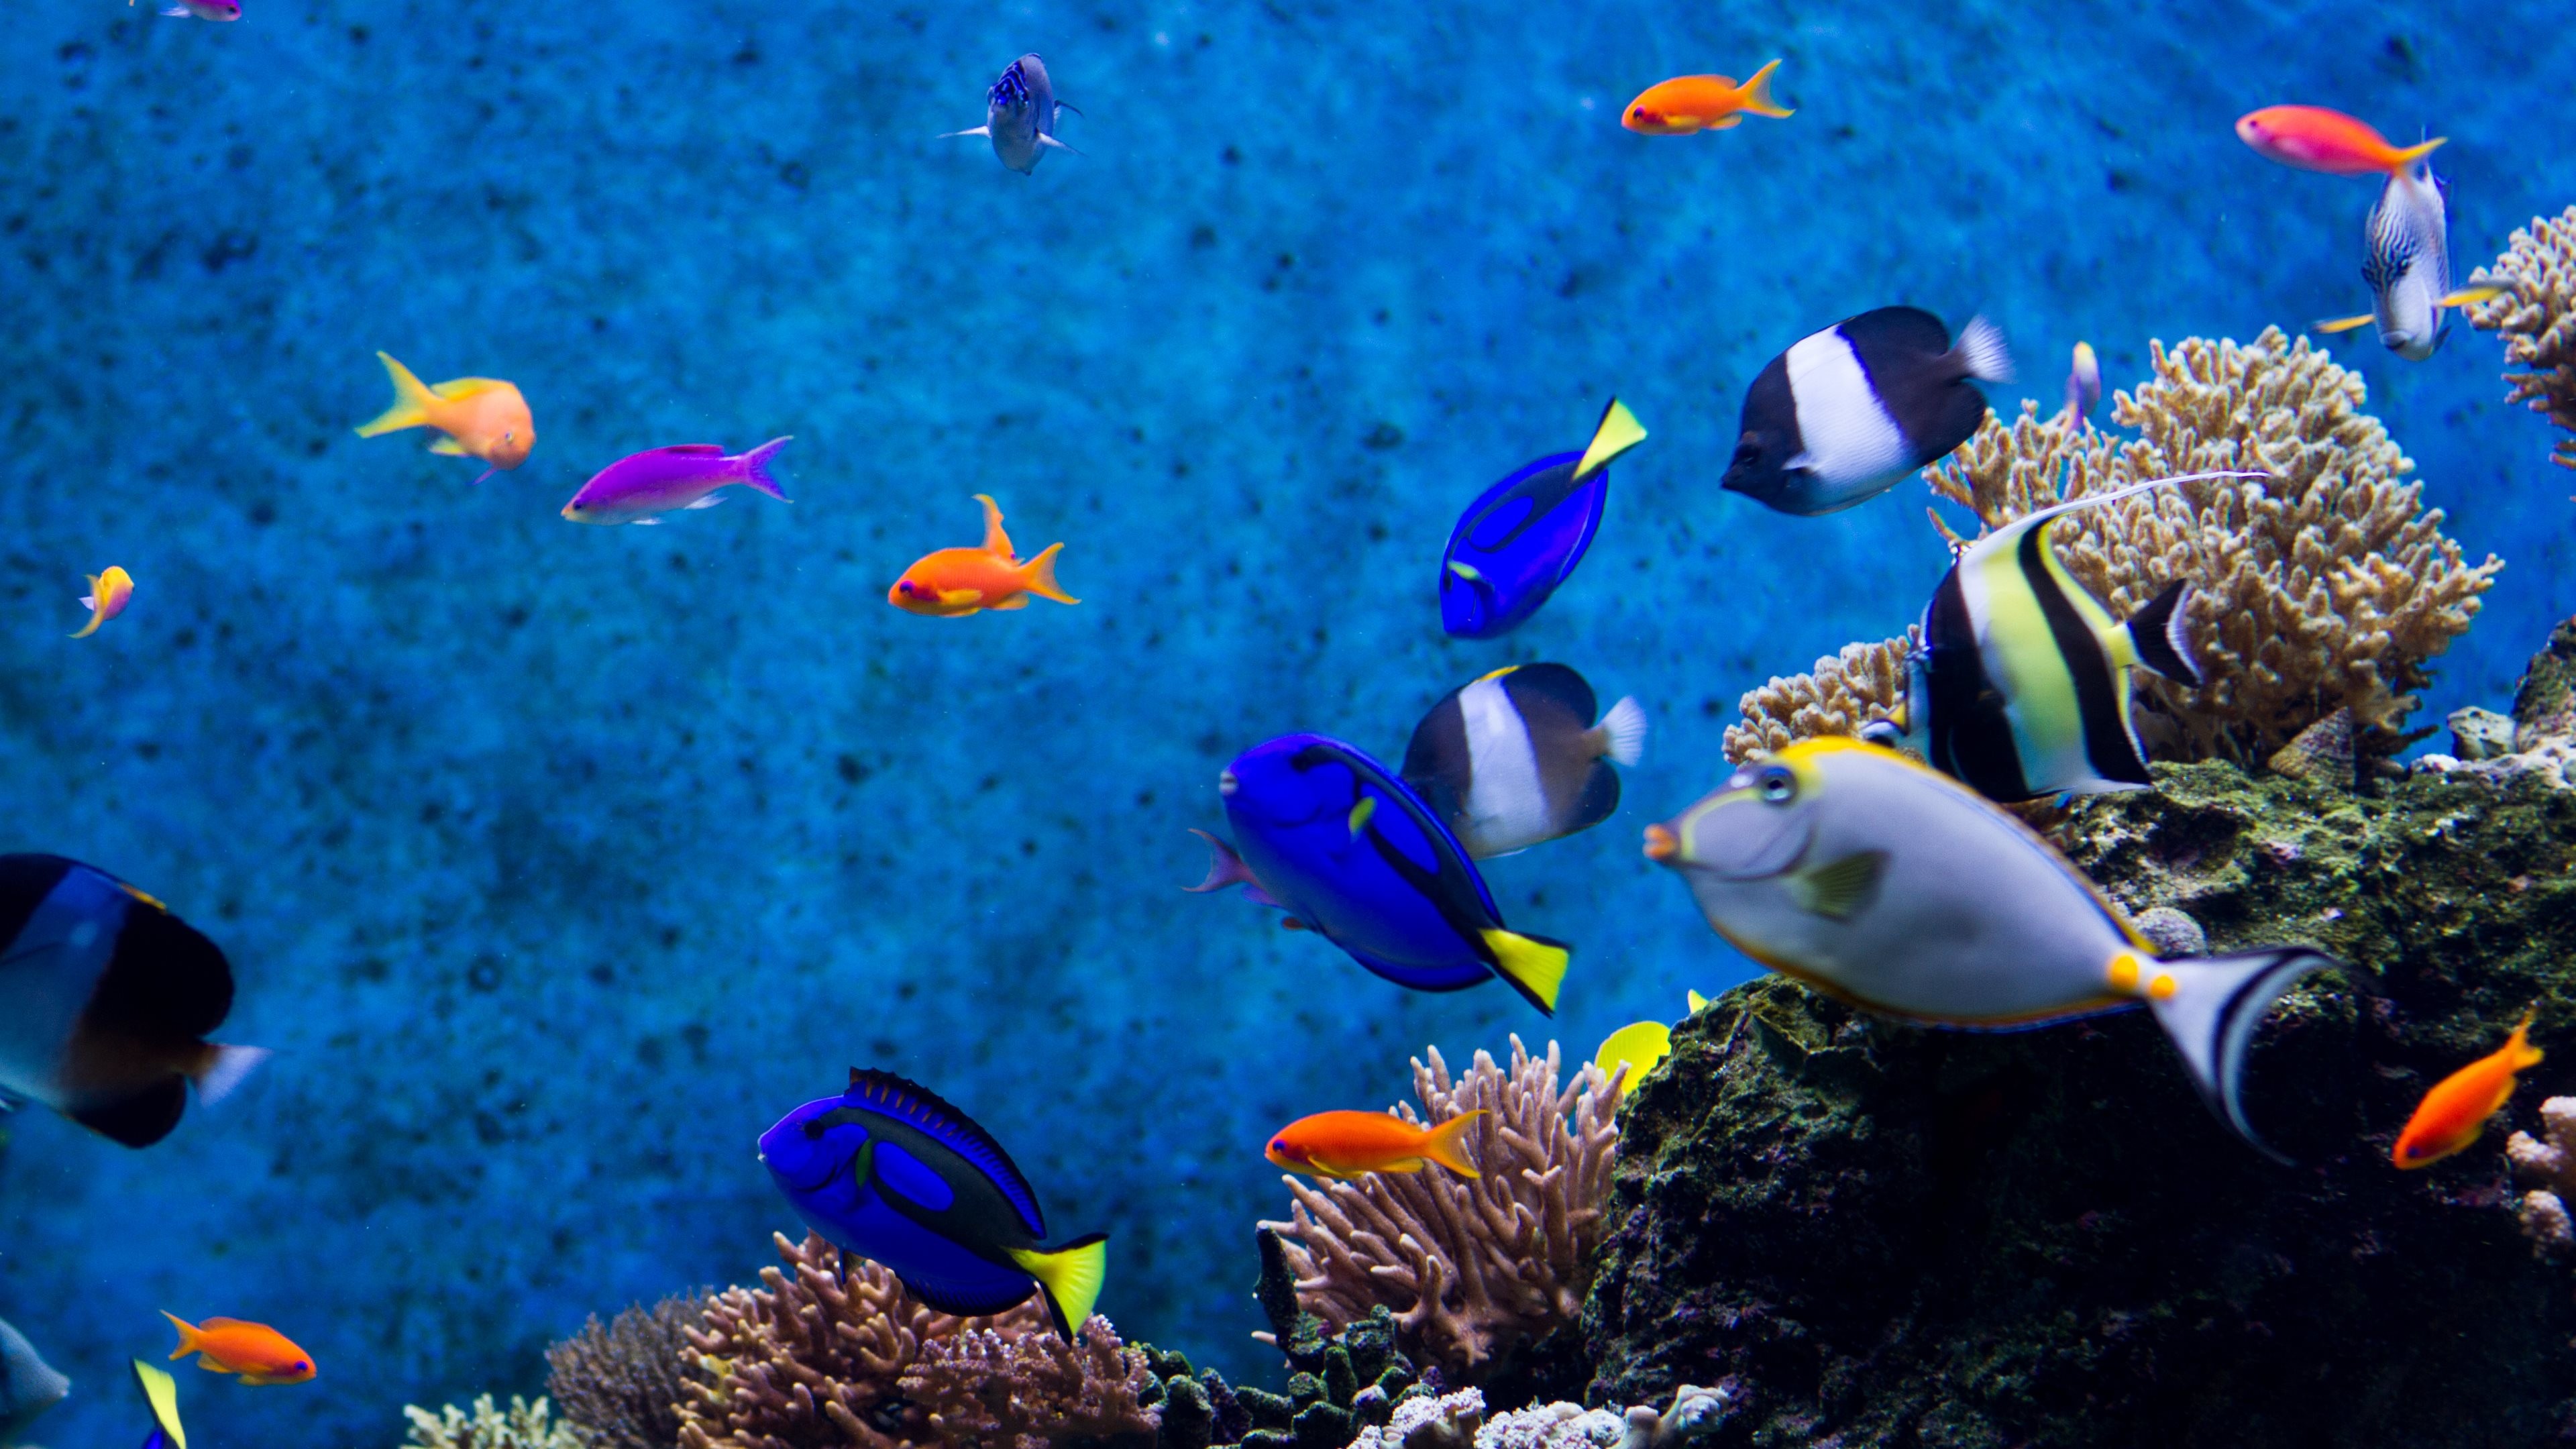 Aquarium Live Wallpaper Windows 10